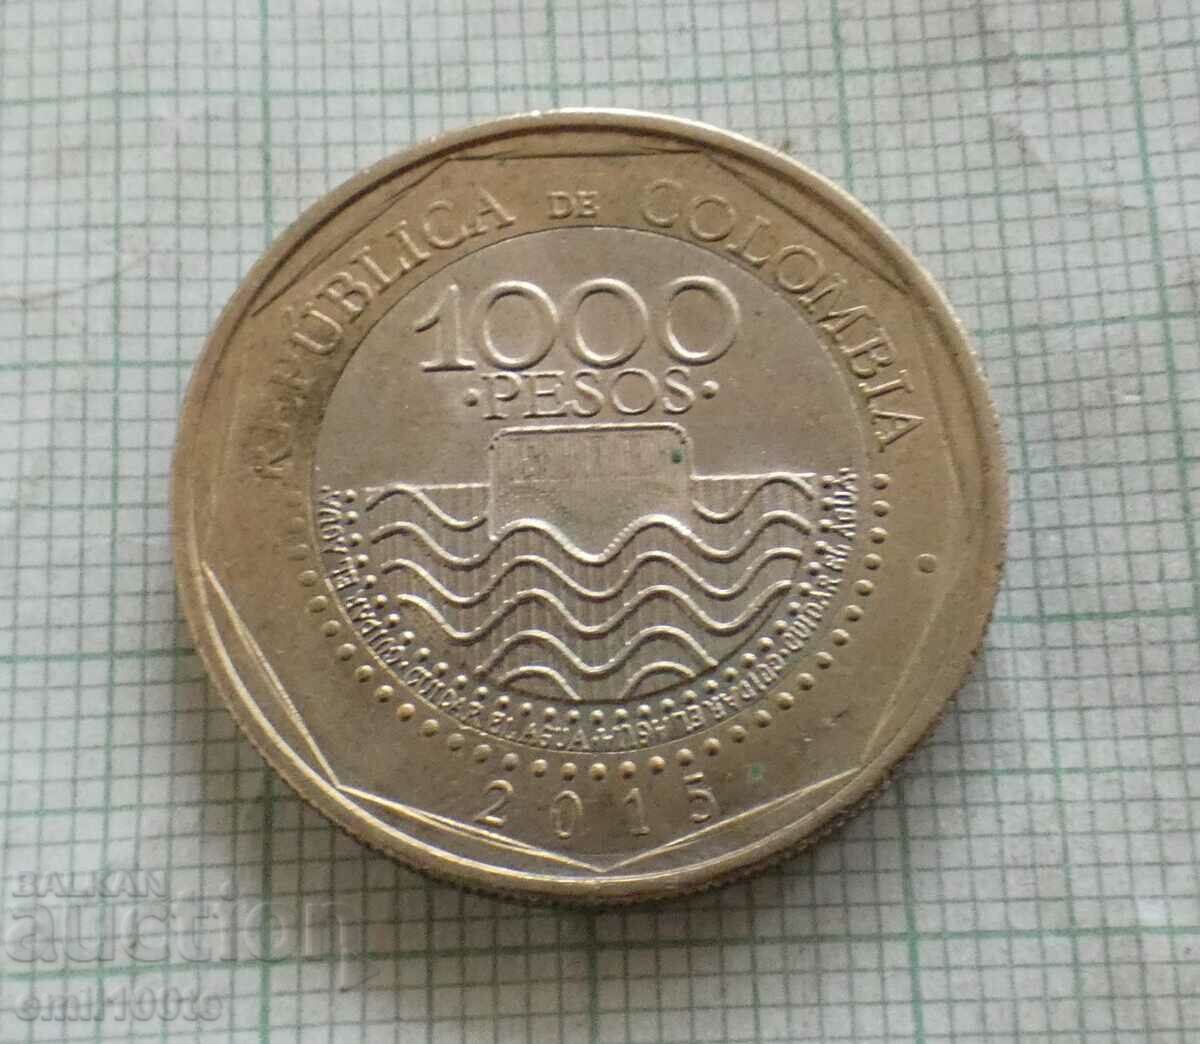 1000 песос 2015 година Колумбия